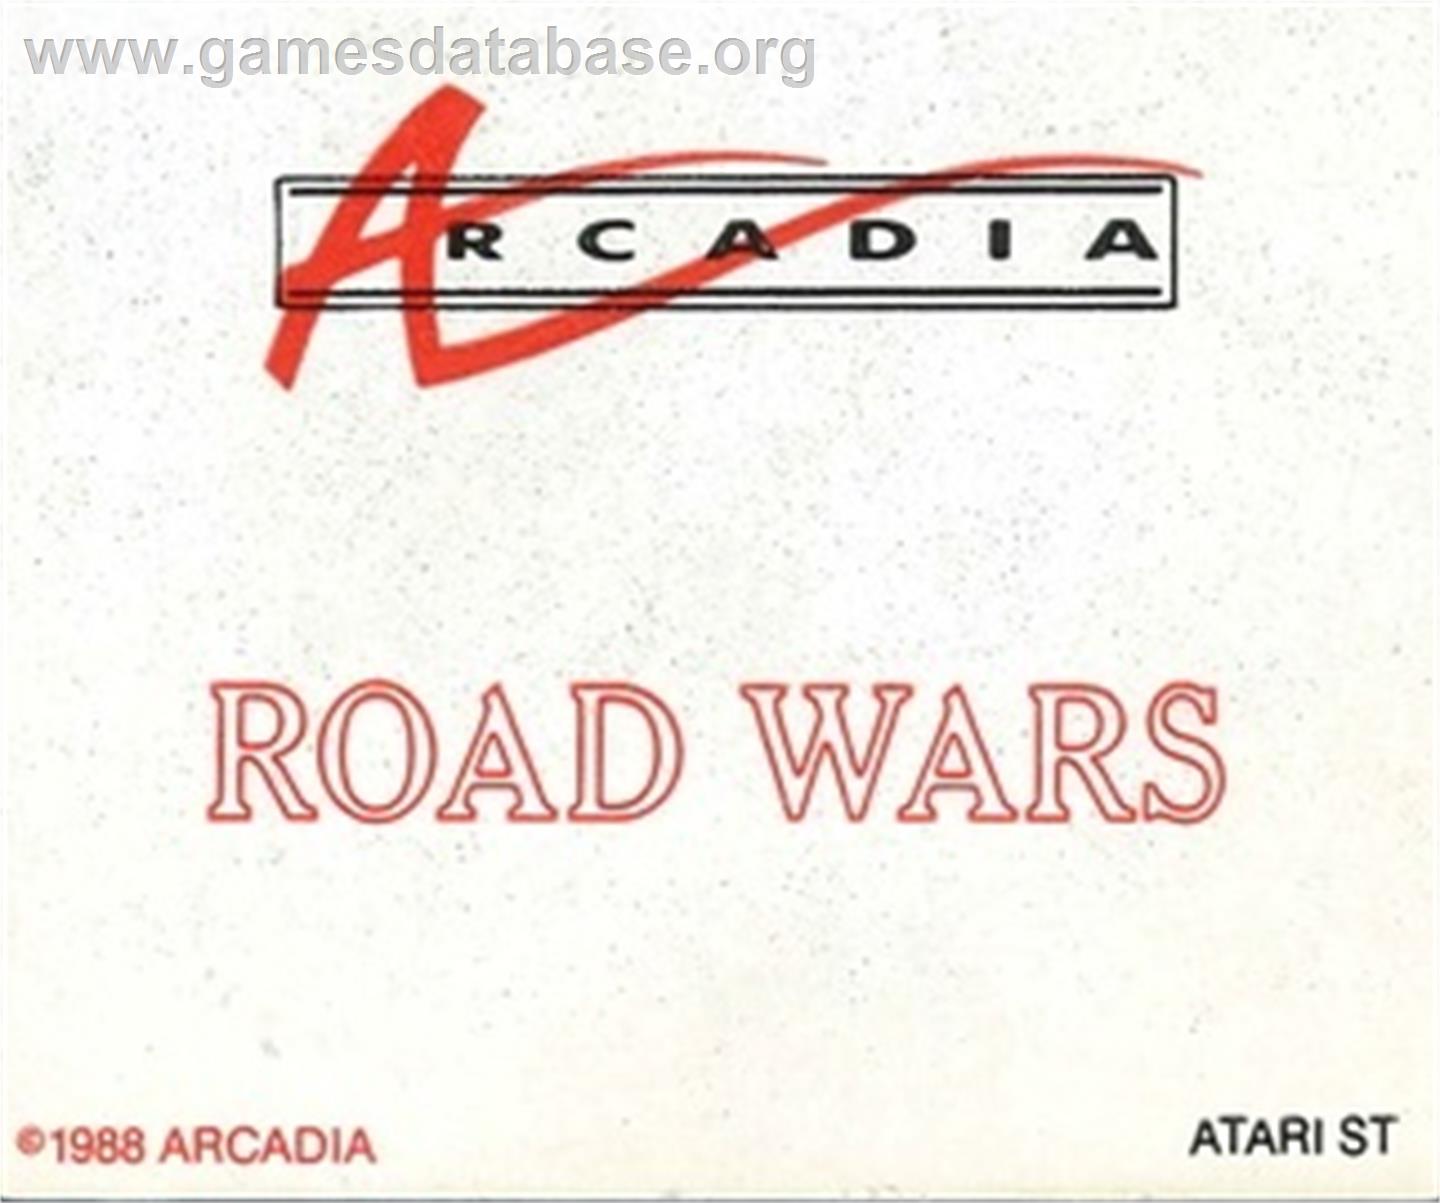 RoadWars - Atari ST - Artwork - Cartridge Top